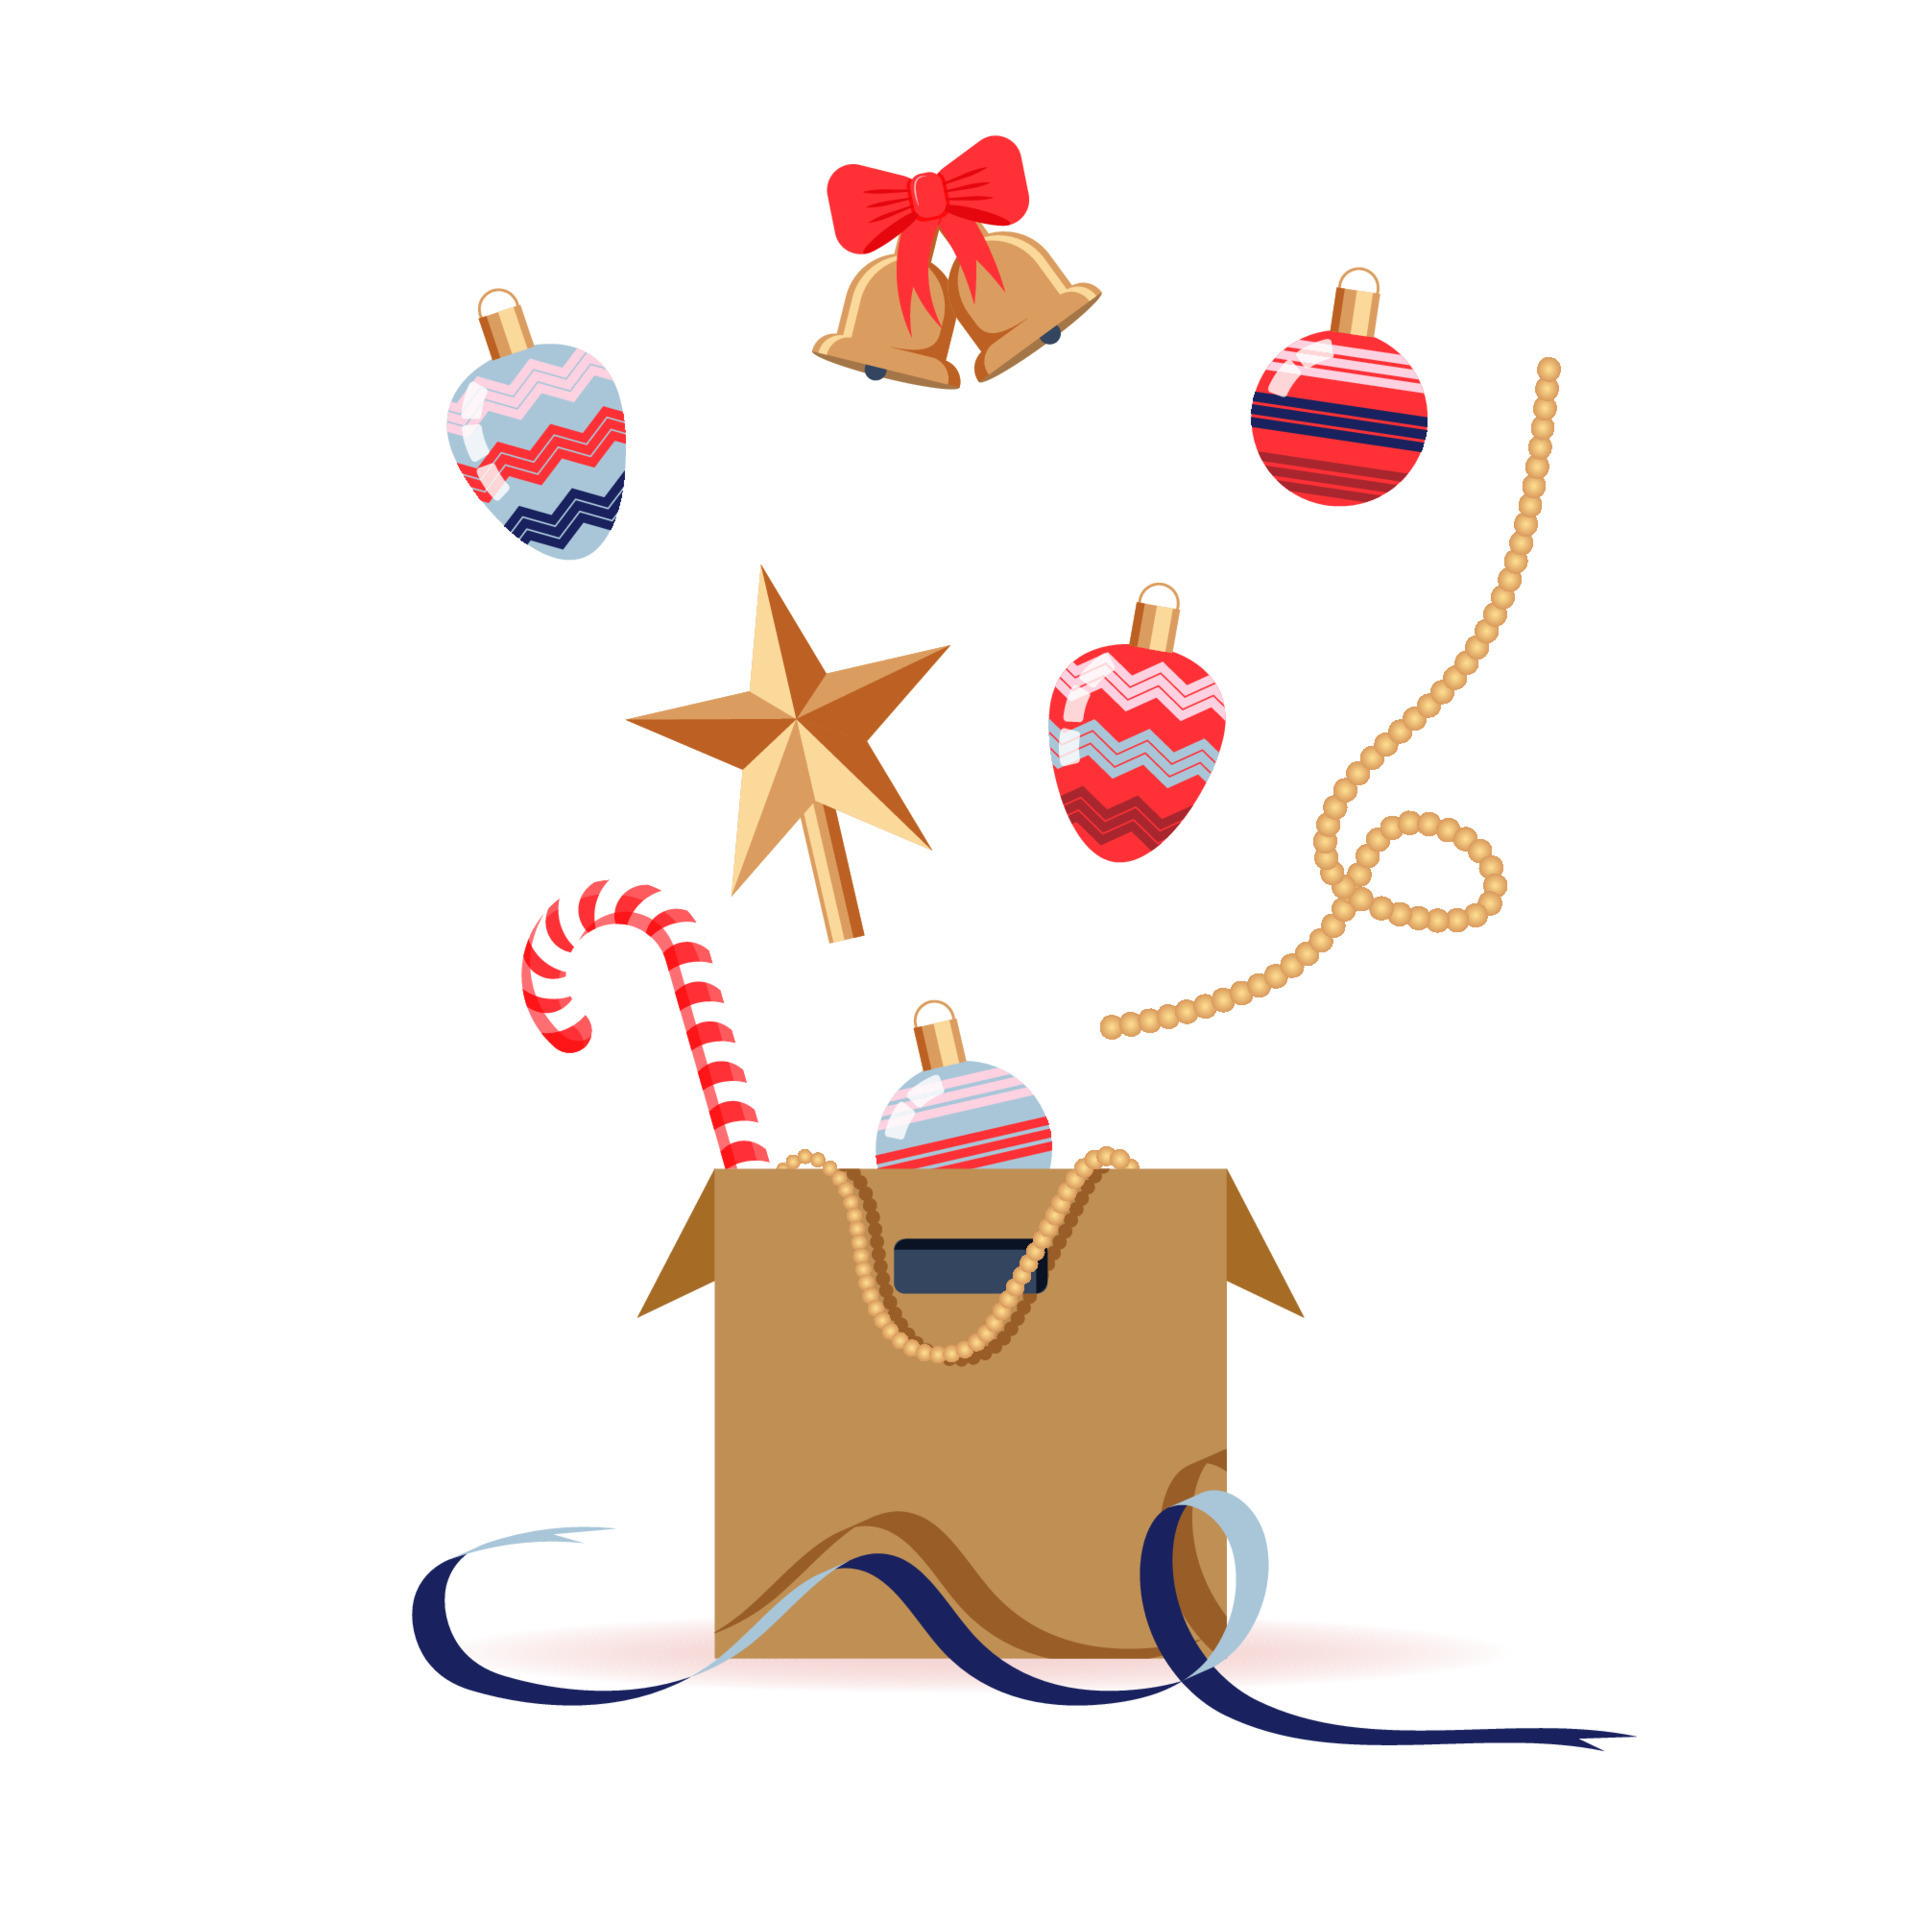 decoração de natal voando para fora da caixa de papelão. bugigangas, topper  de árvore, enfeites e sinos estão no ar, acima da caixa. ilustração  vetorial no estilo simples dos desenhos animados. 13275154